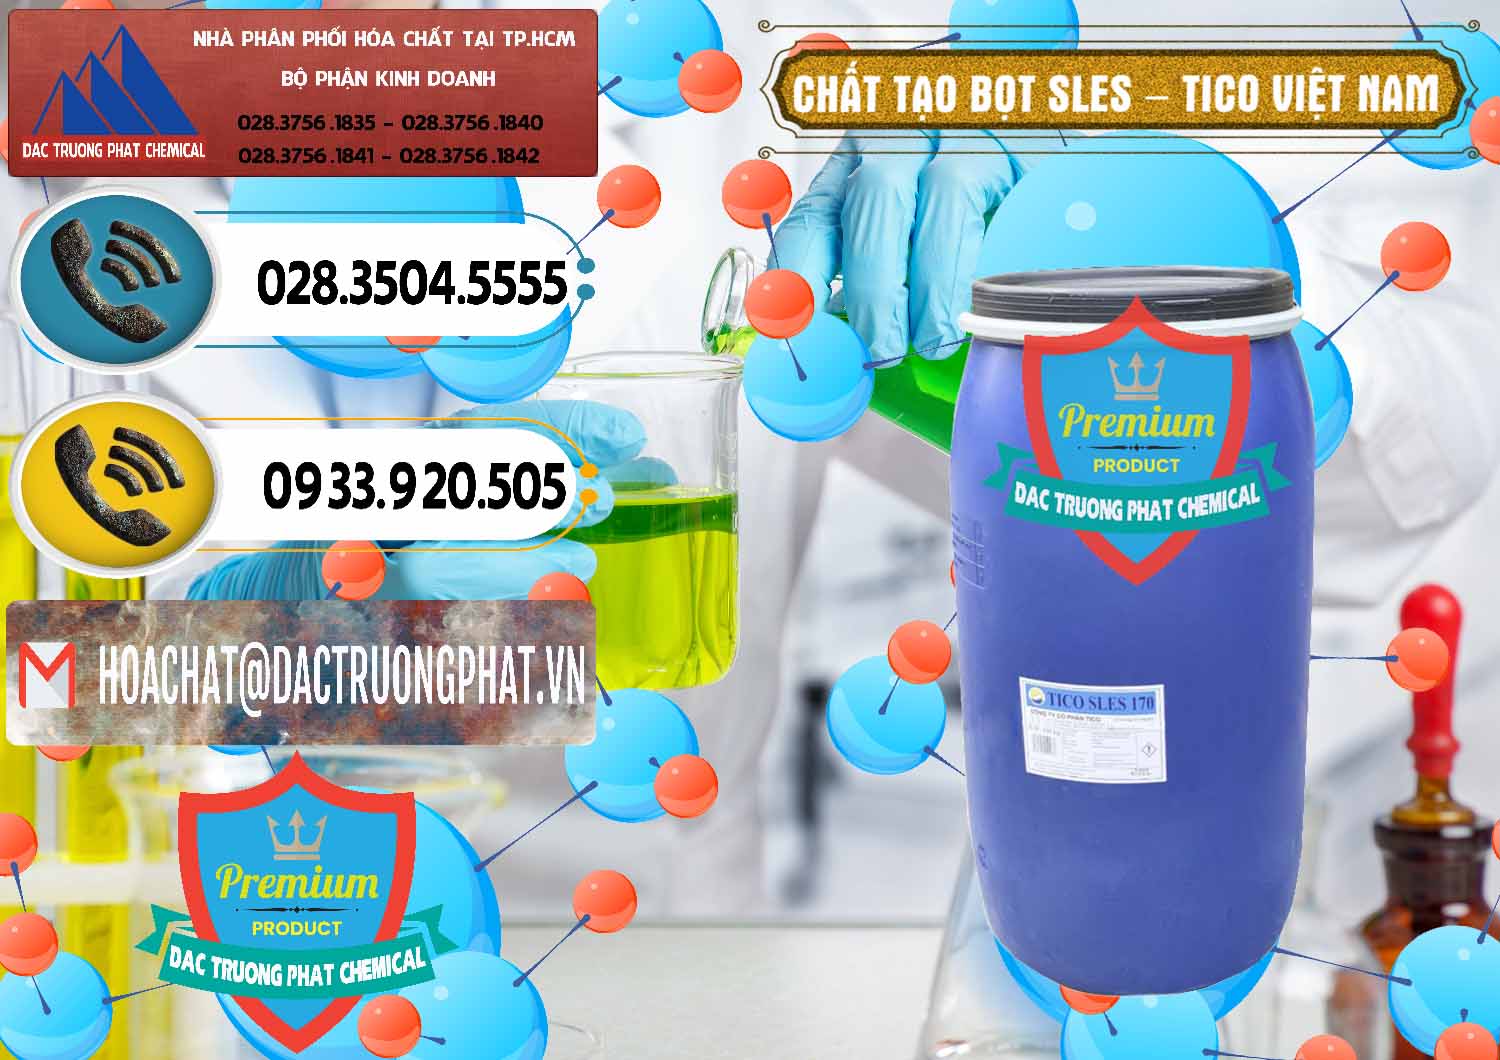 Cty bán ( cung ứng ) Chất Tạo Bọt Sles - Sodium Lauryl Ether Sulphate Tico Việt Nam - 0304 - Chuyên phân phối ( kinh doanh ) hóa chất tại TP.HCM - hoachatdetnhuom.vn